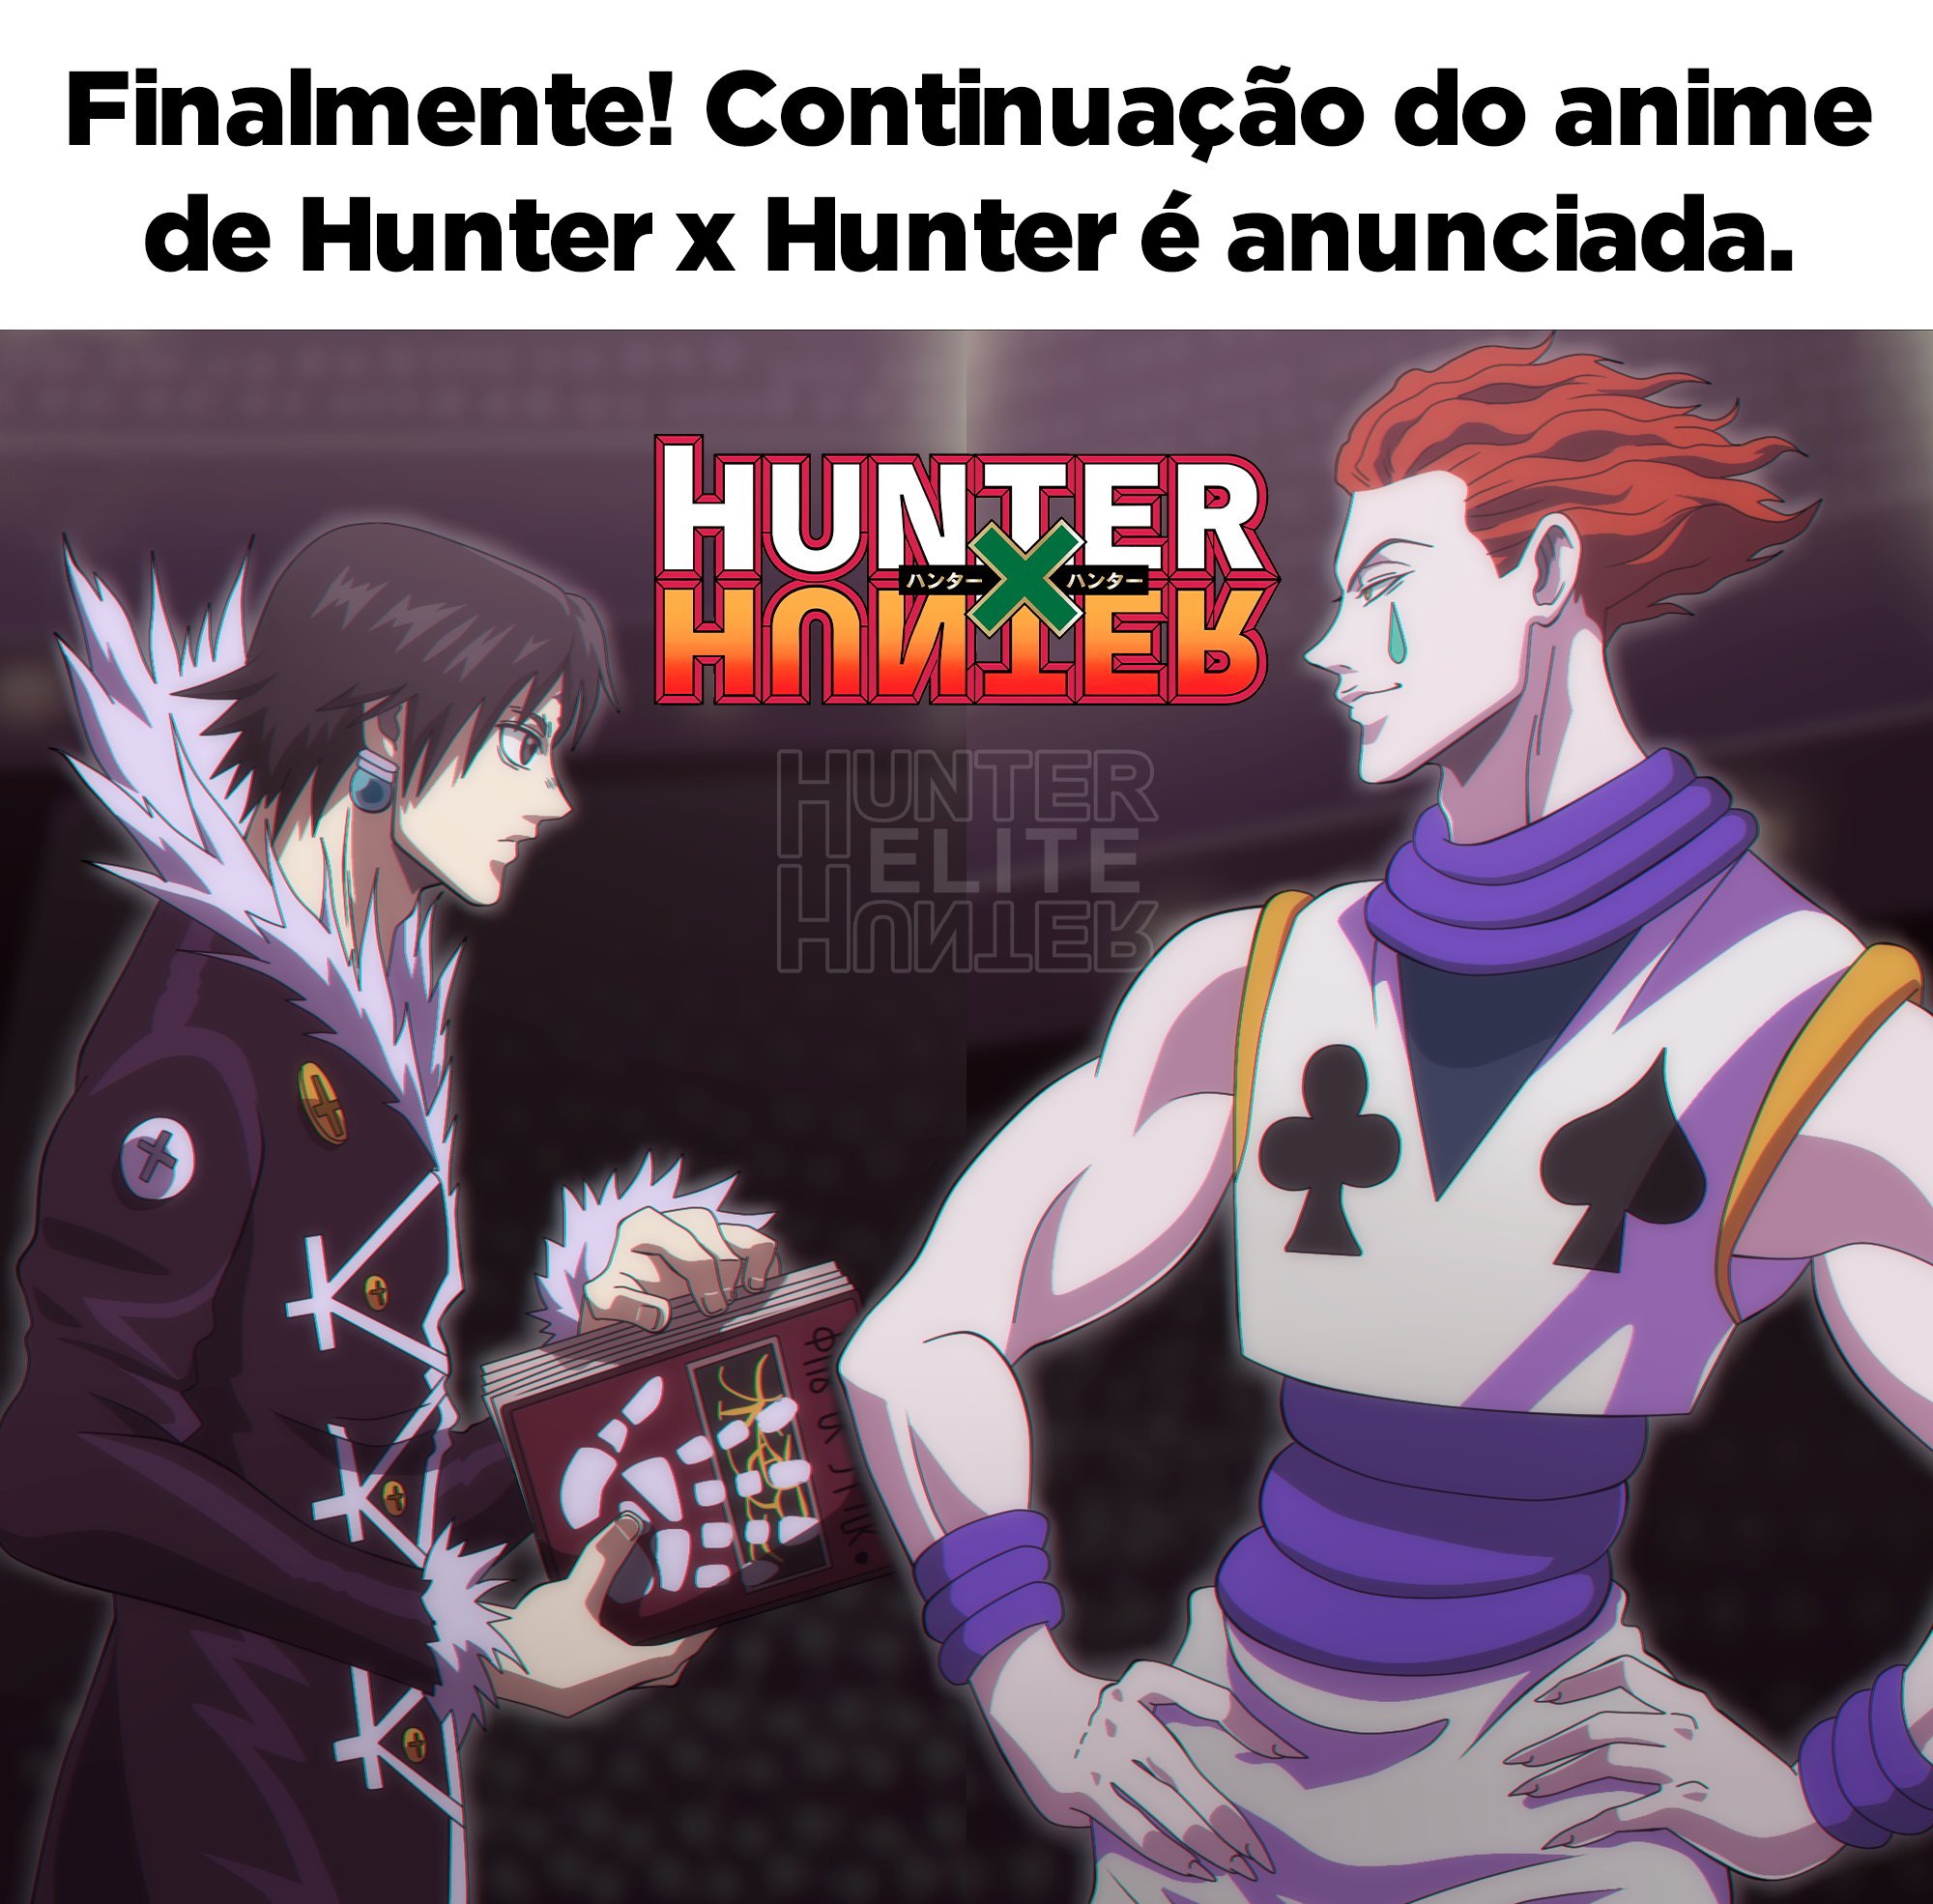 Elite Hunter x Hunter on X: A nova temporada de Hunter x Hunter irá  adaptar os acontecimentos do Continente Negro e lutas como Hisoka Vs  Chrollo finalmente serão animadas.  / X